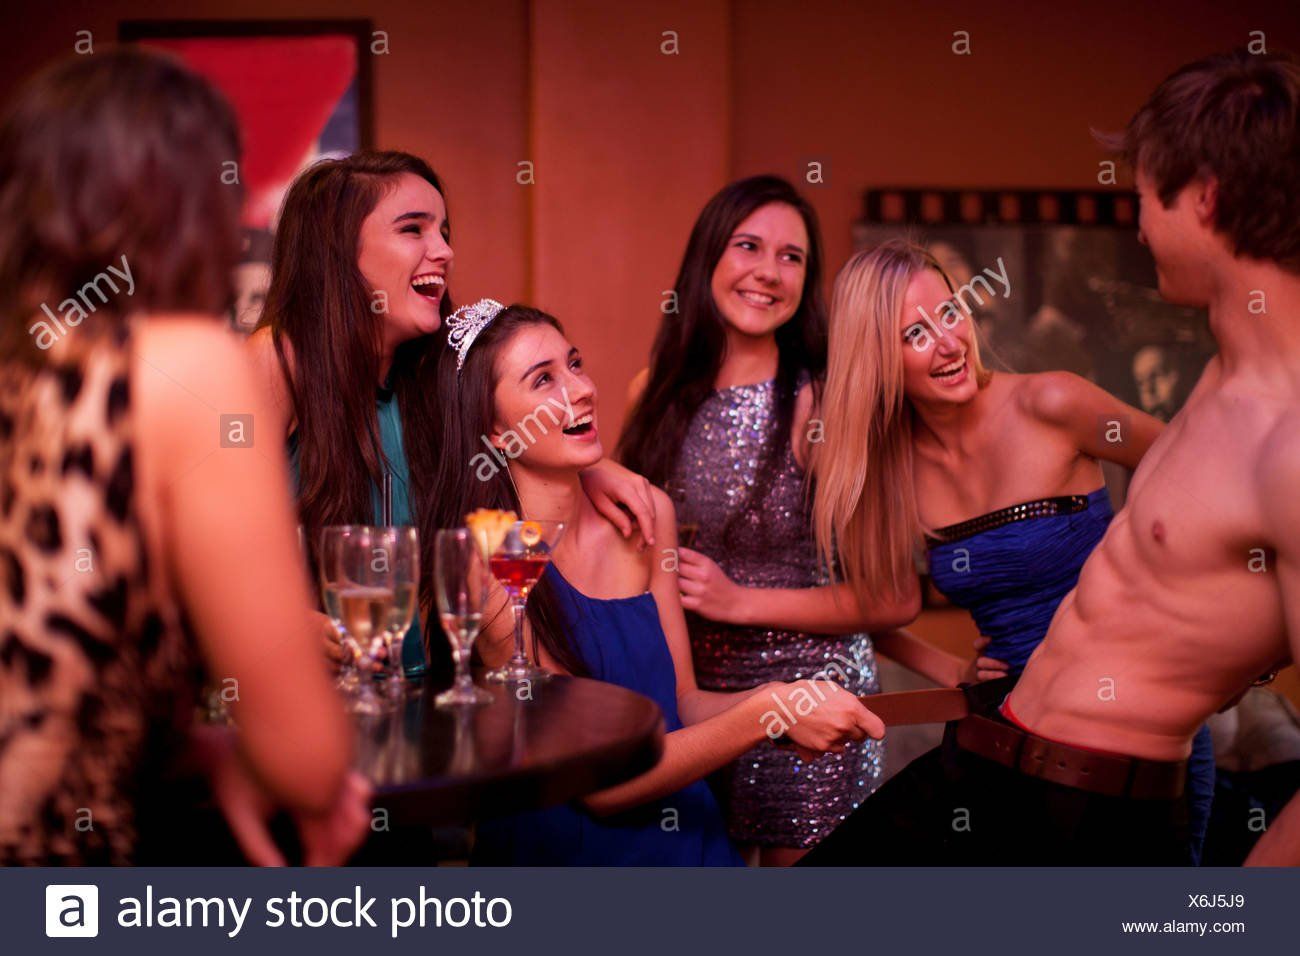 Women hen party male stripper